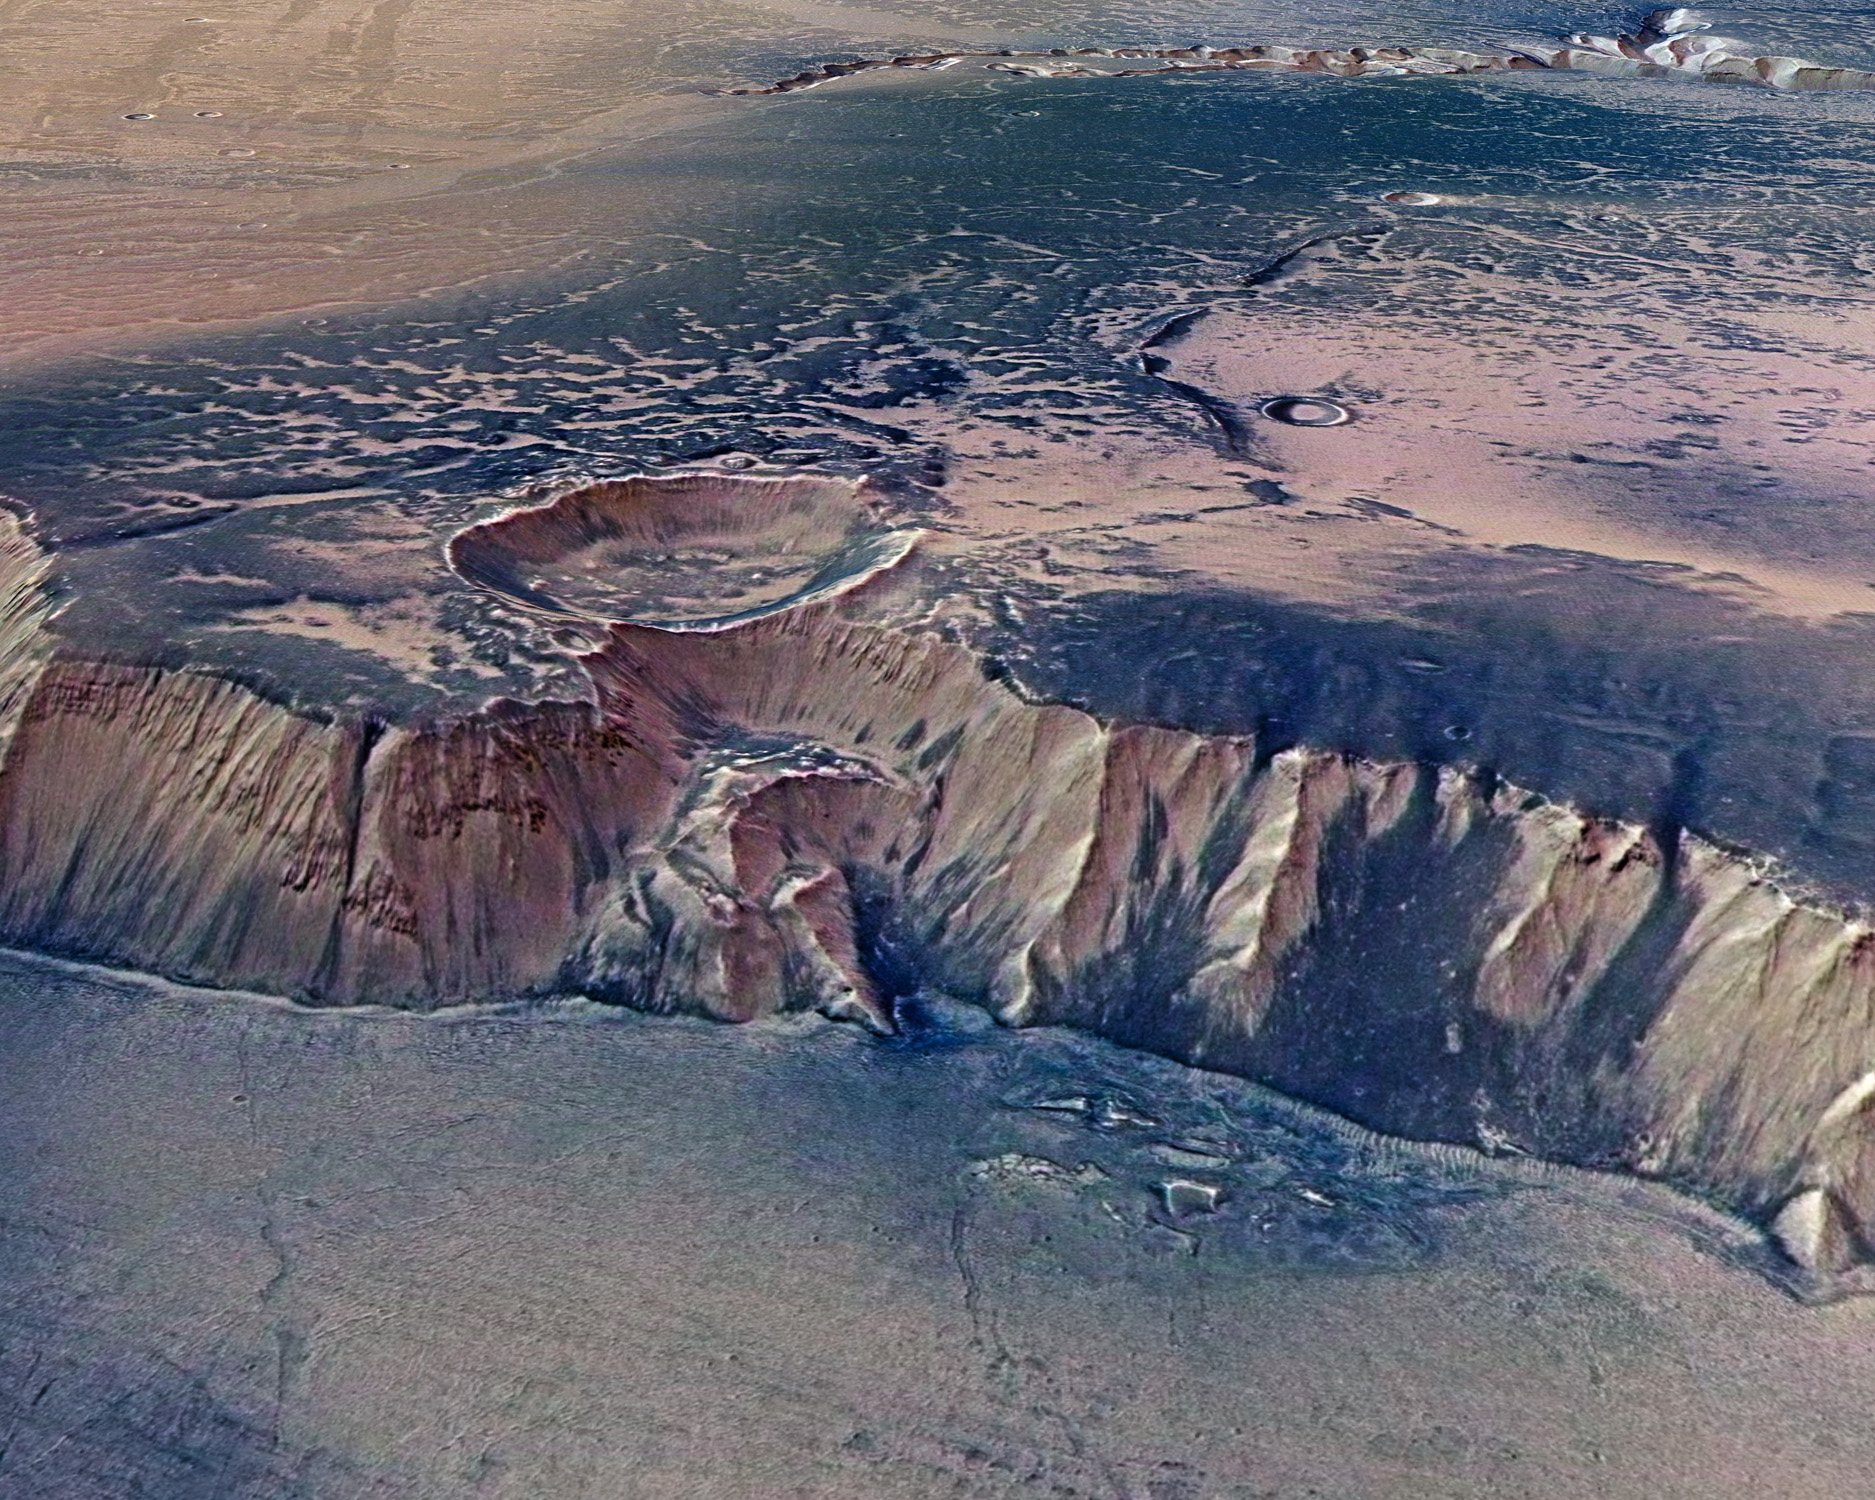 Les falaises d’Echus Chasma